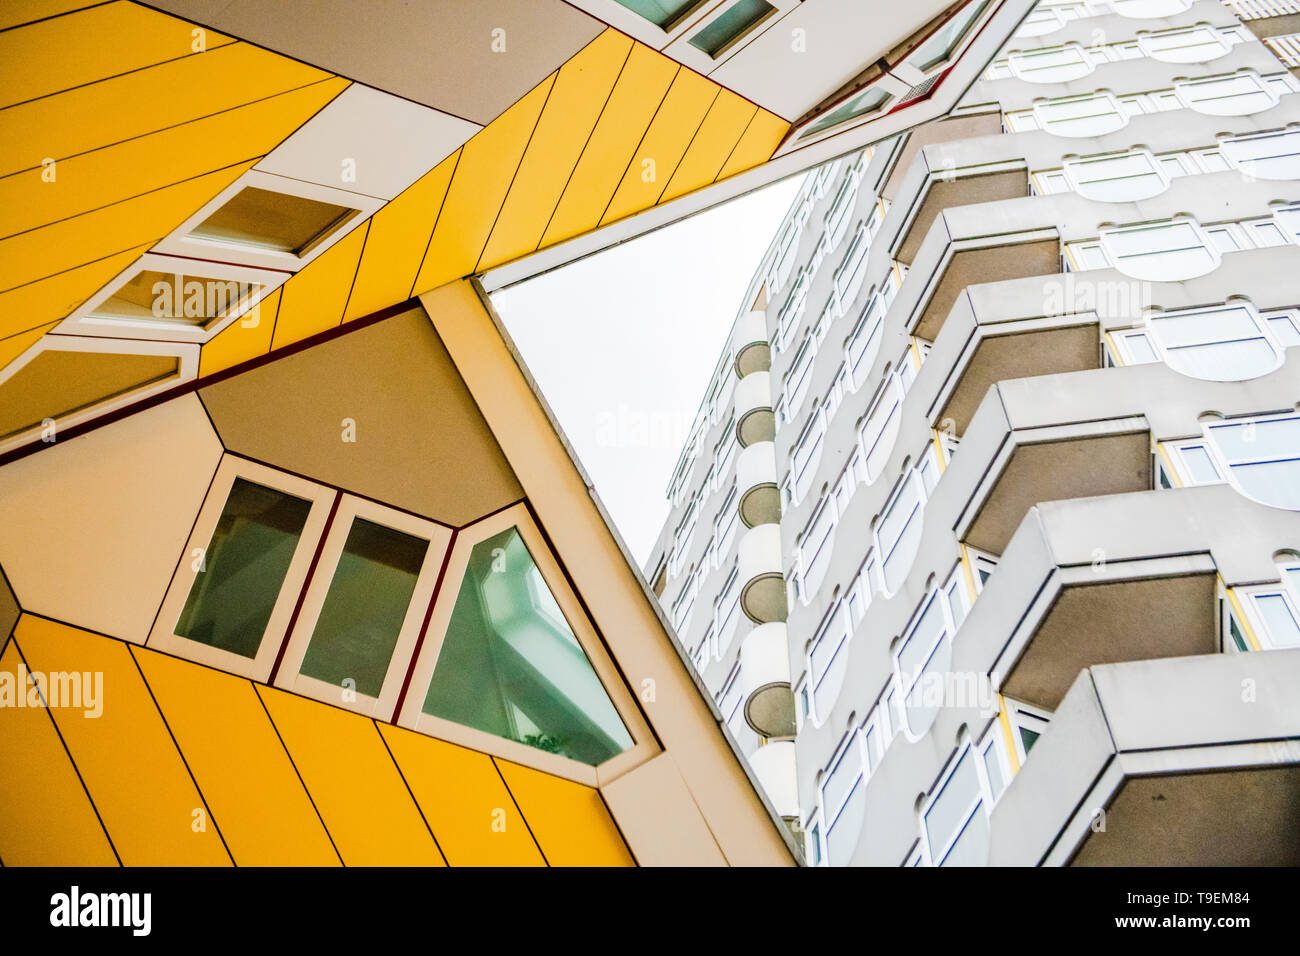 Maisons Cube Rotterdam - Piet Blom architecte - architecture moderne - Photographie - résumé résumé photo - Tourisme tourisme néerlandais aux Pays-Bas Banque D'Images